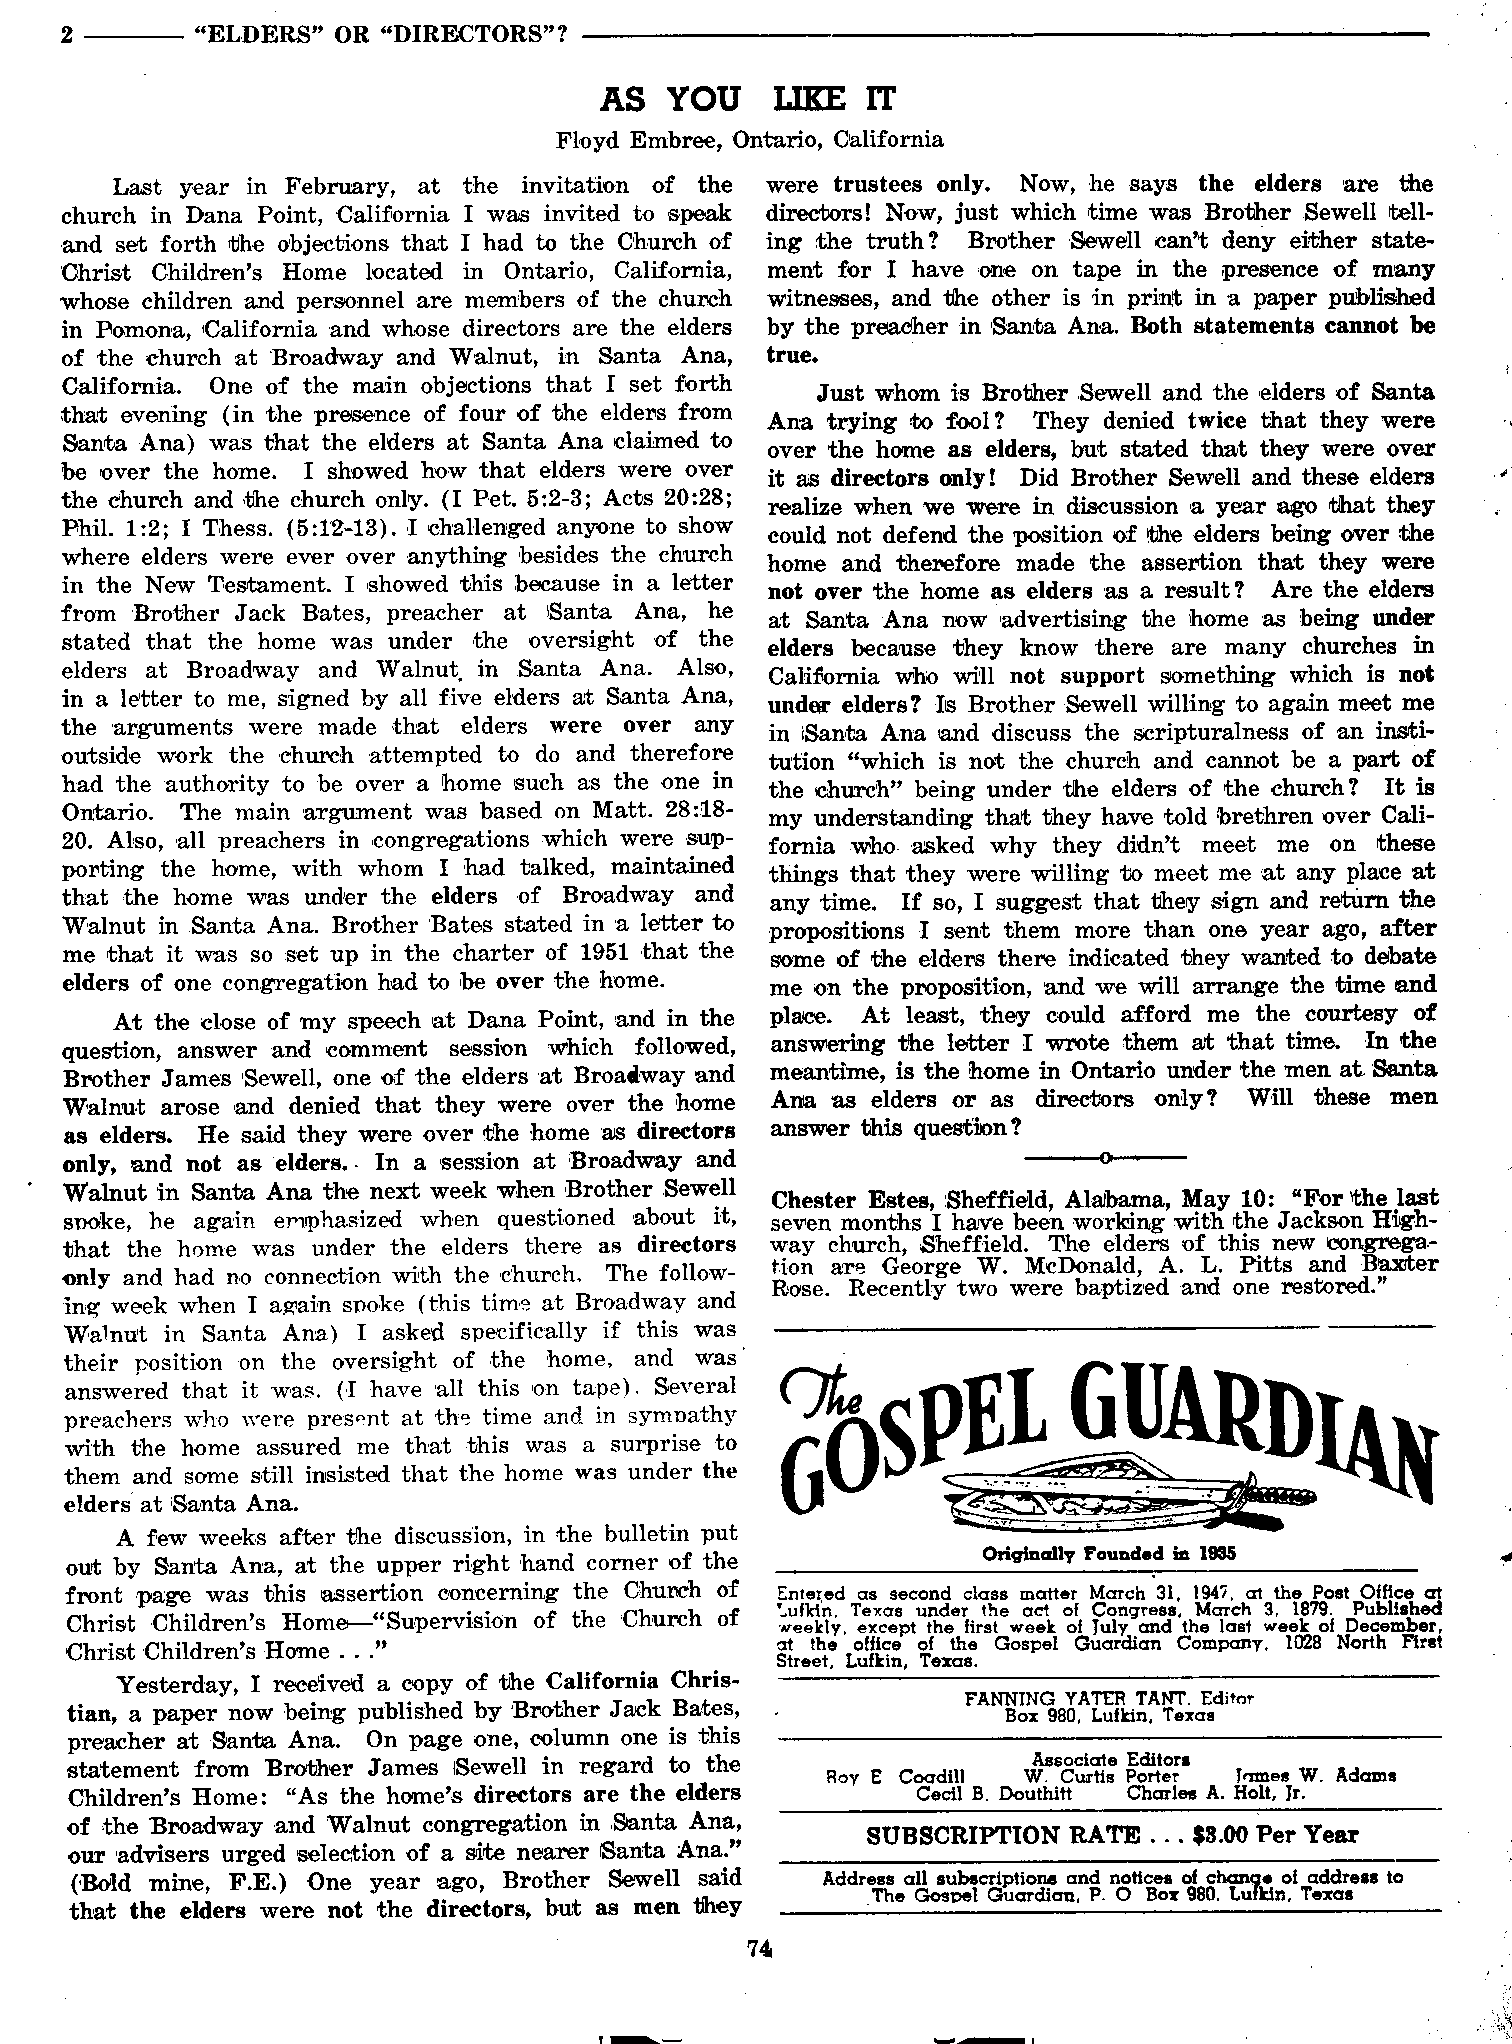 Gospel Guardian Original: Vol.8 No.5 Pg.2